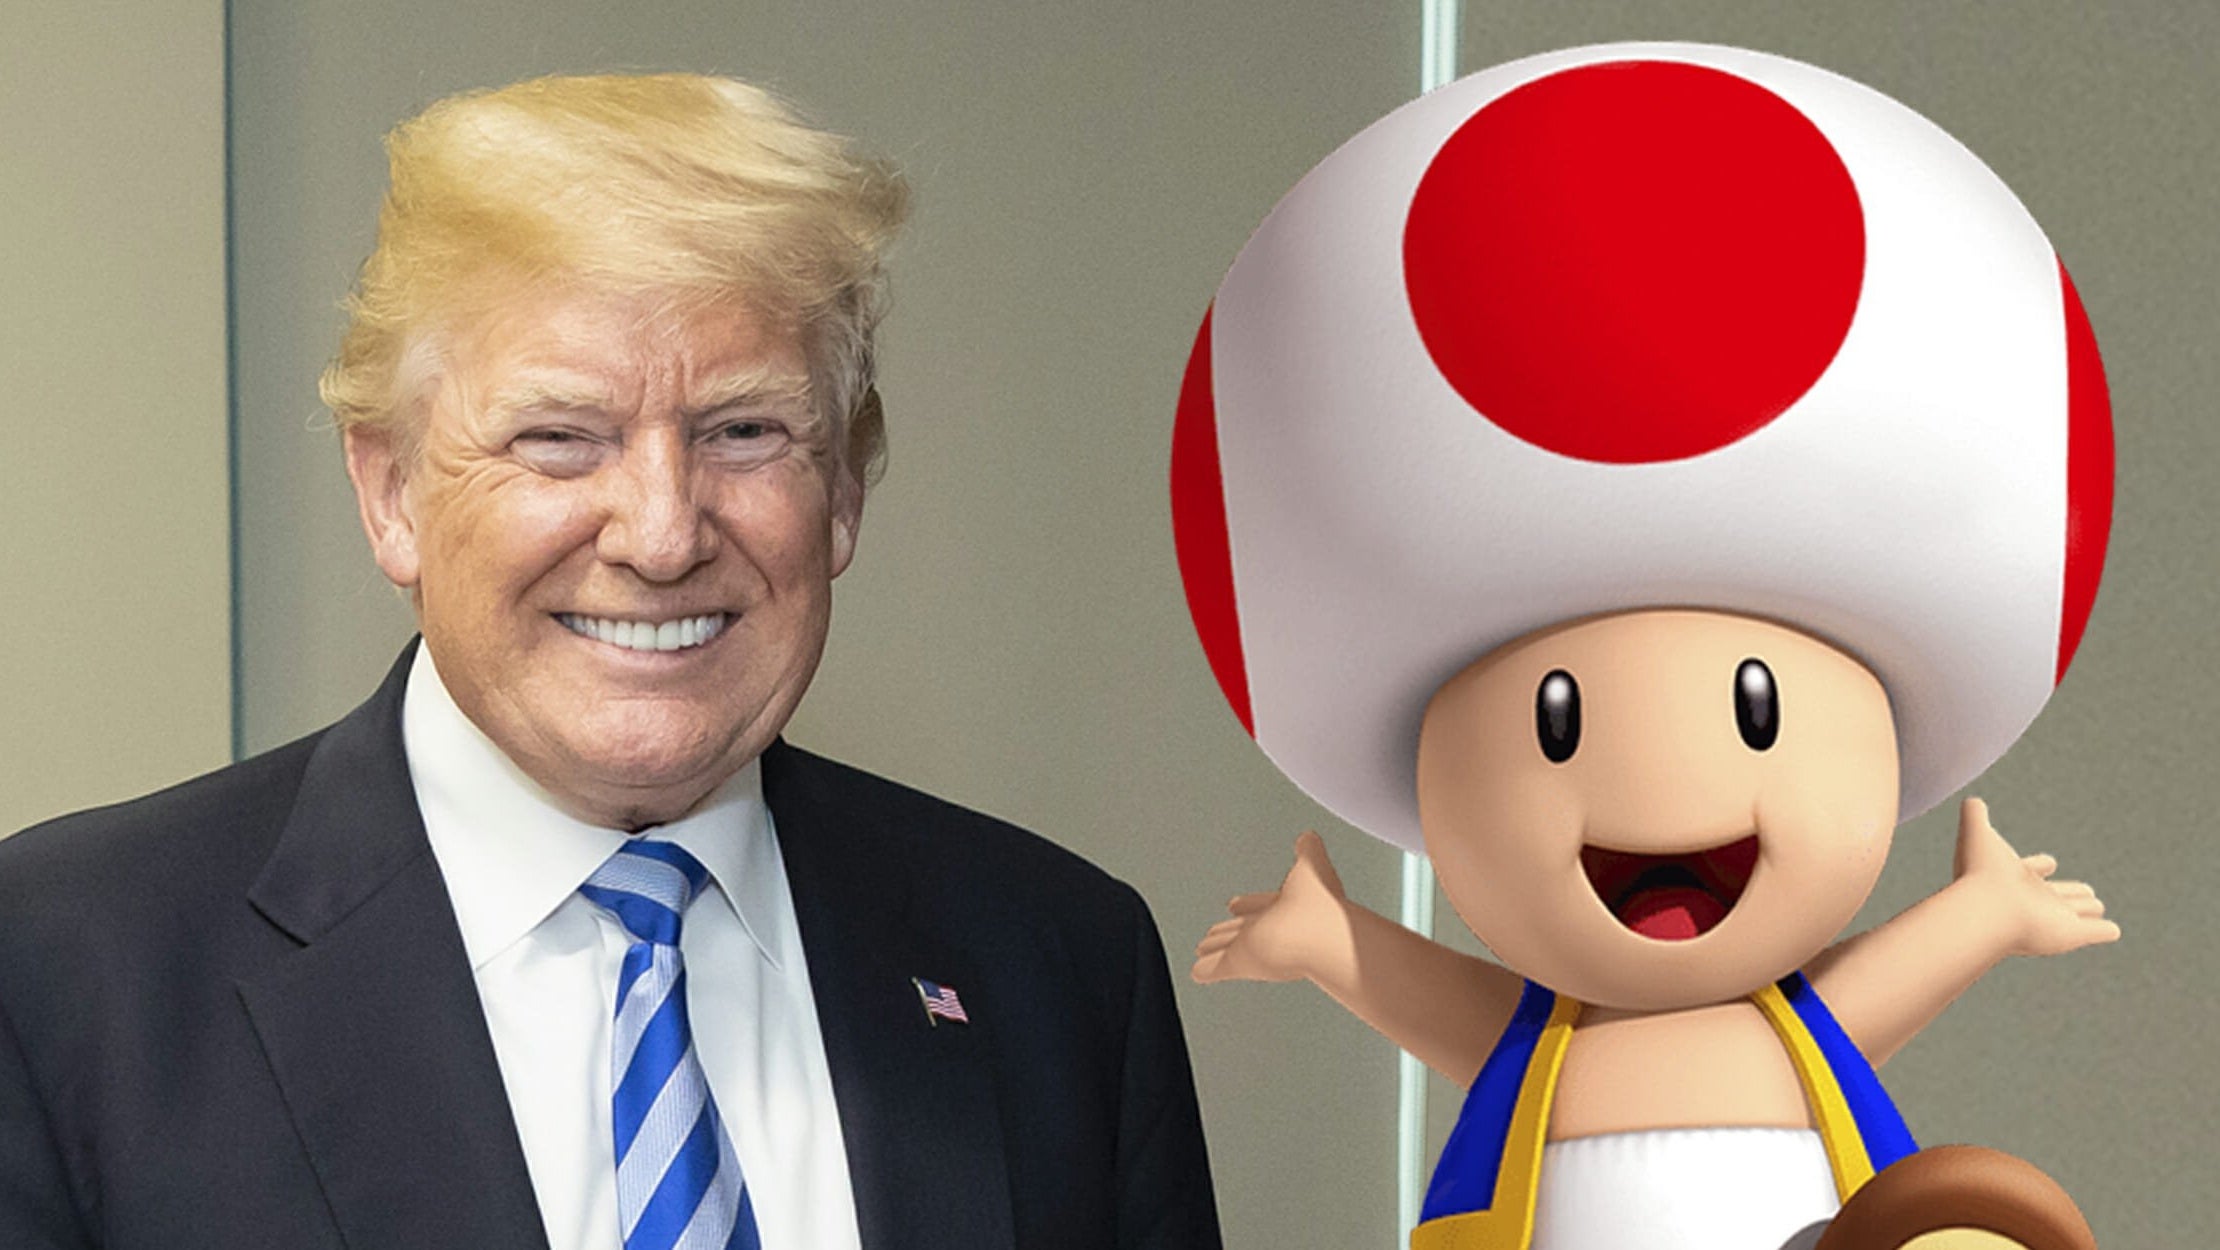 Immagine di "Il pene di Trump assomiglia a Toad" e Mario Kart diventa uno dei trend del momento